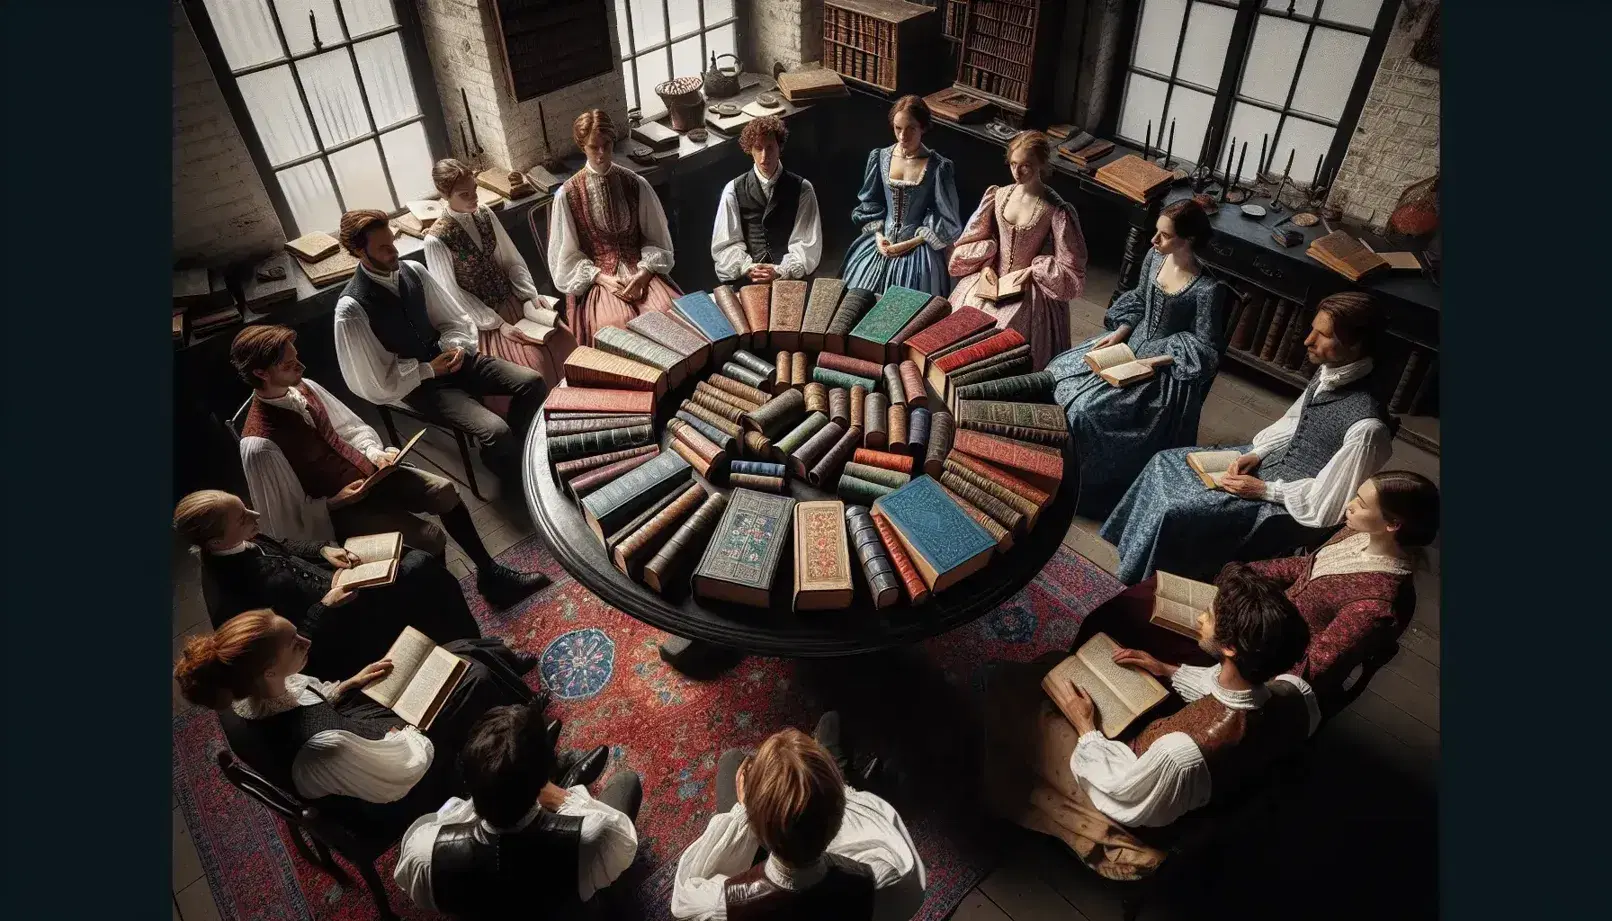 Grupo de personas en atuendos de época participando en un club de lectura alrededor de una mesa redonda con libros antiguos, en una habitación con paredes de ladrillo y alfombras persas.